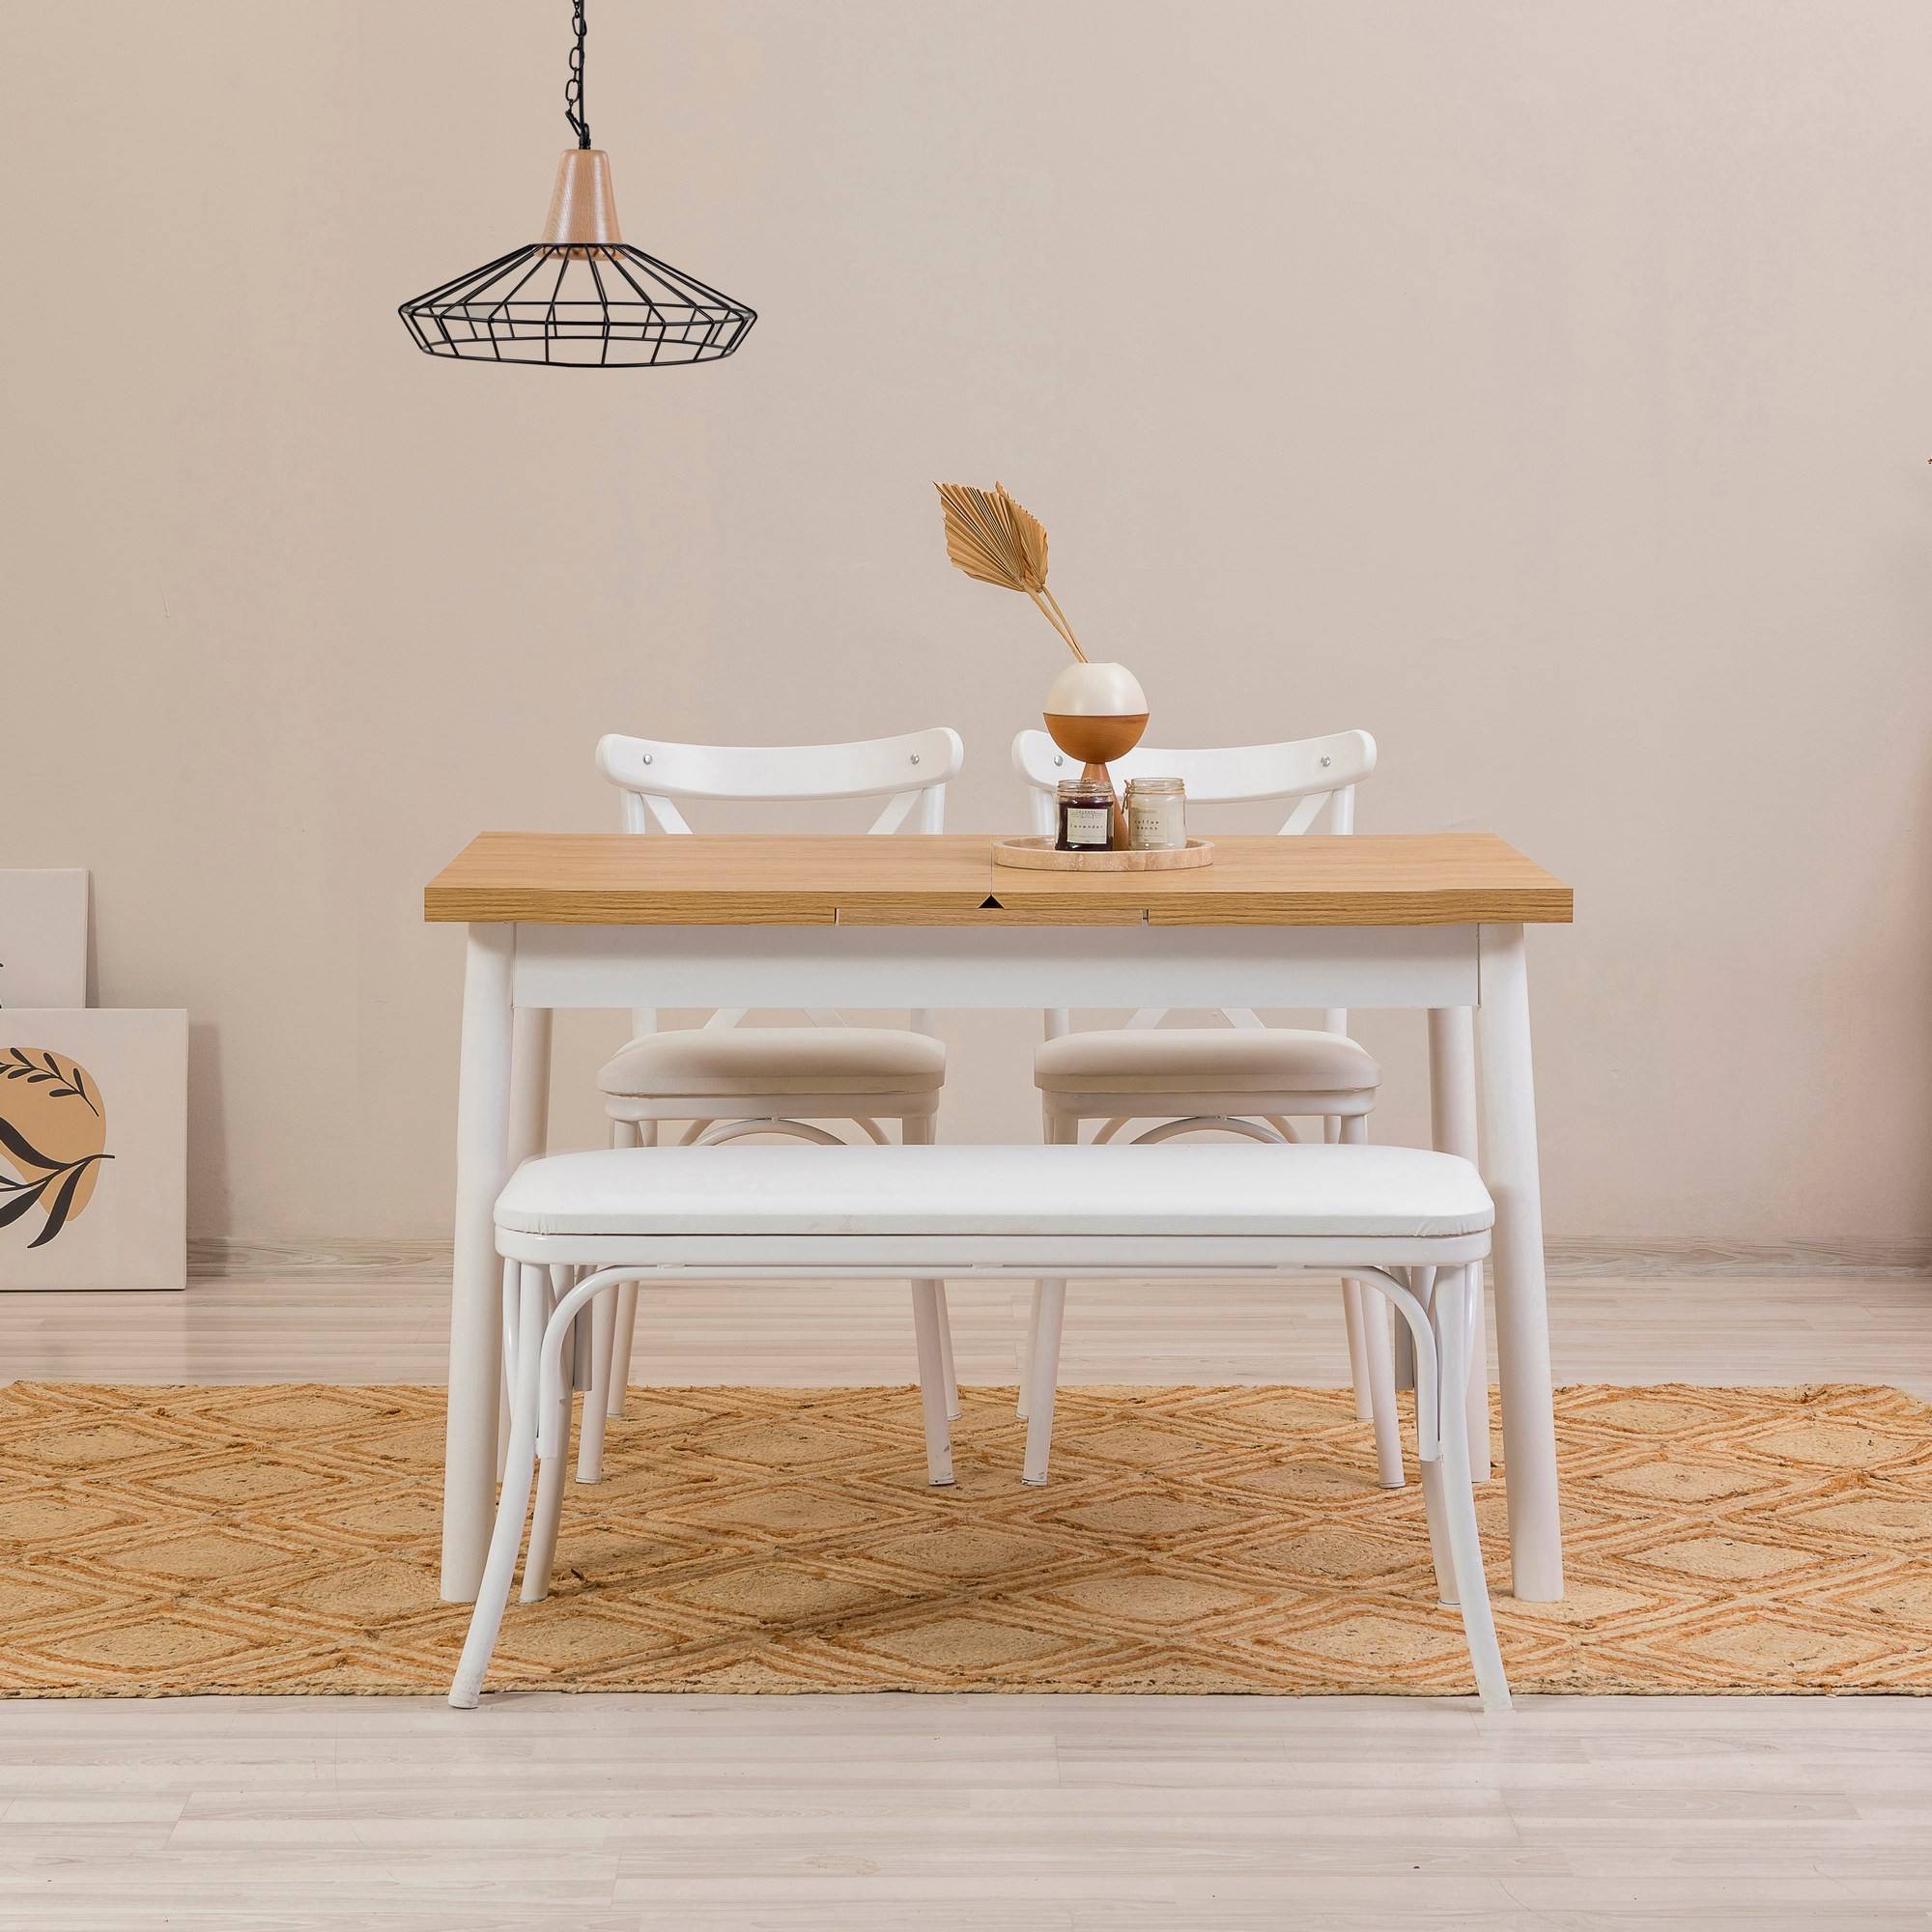 Set di 2 sedie bianche, 1 panca e 1 tavolo allungabile in legno chiaro e bianco Iridus